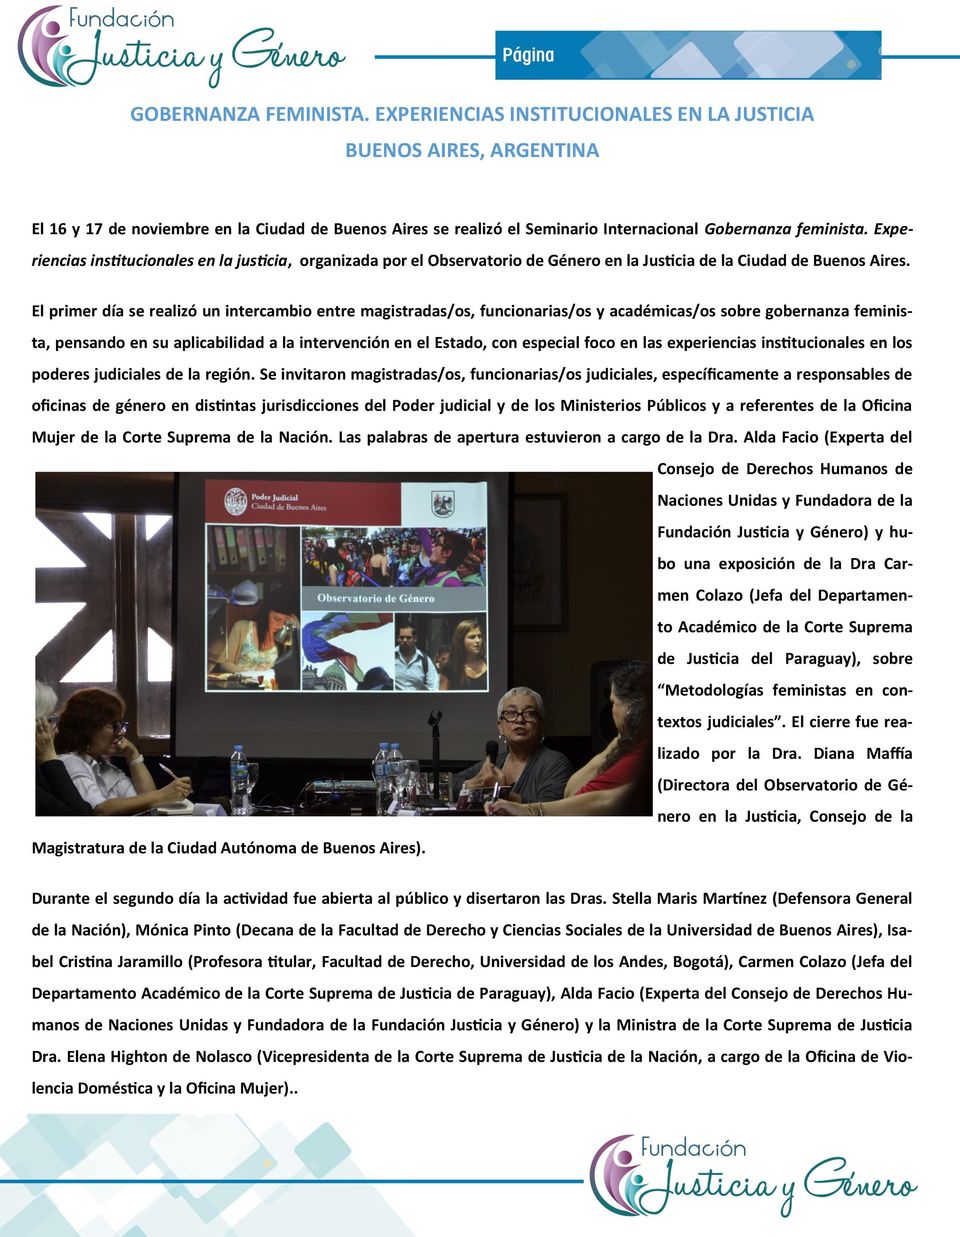 Experiencias institucionales en la justicia, organizada por el Observatorio de Género en la Justicia de la Ciudad de Buenos Aires.